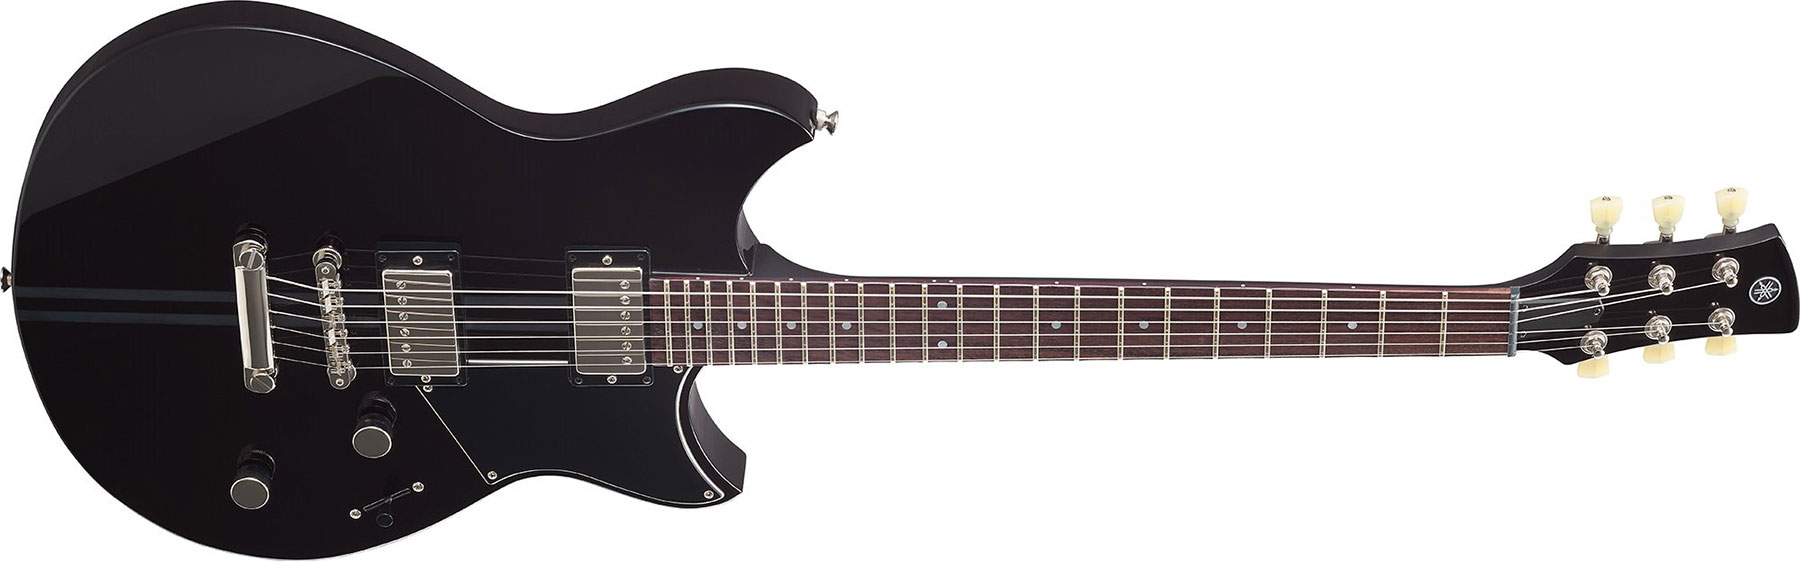 Yamaha Rse20 Revstar Element Hh Ht Rw - Black - Guitarra eléctrica de doble corte - Variation 2